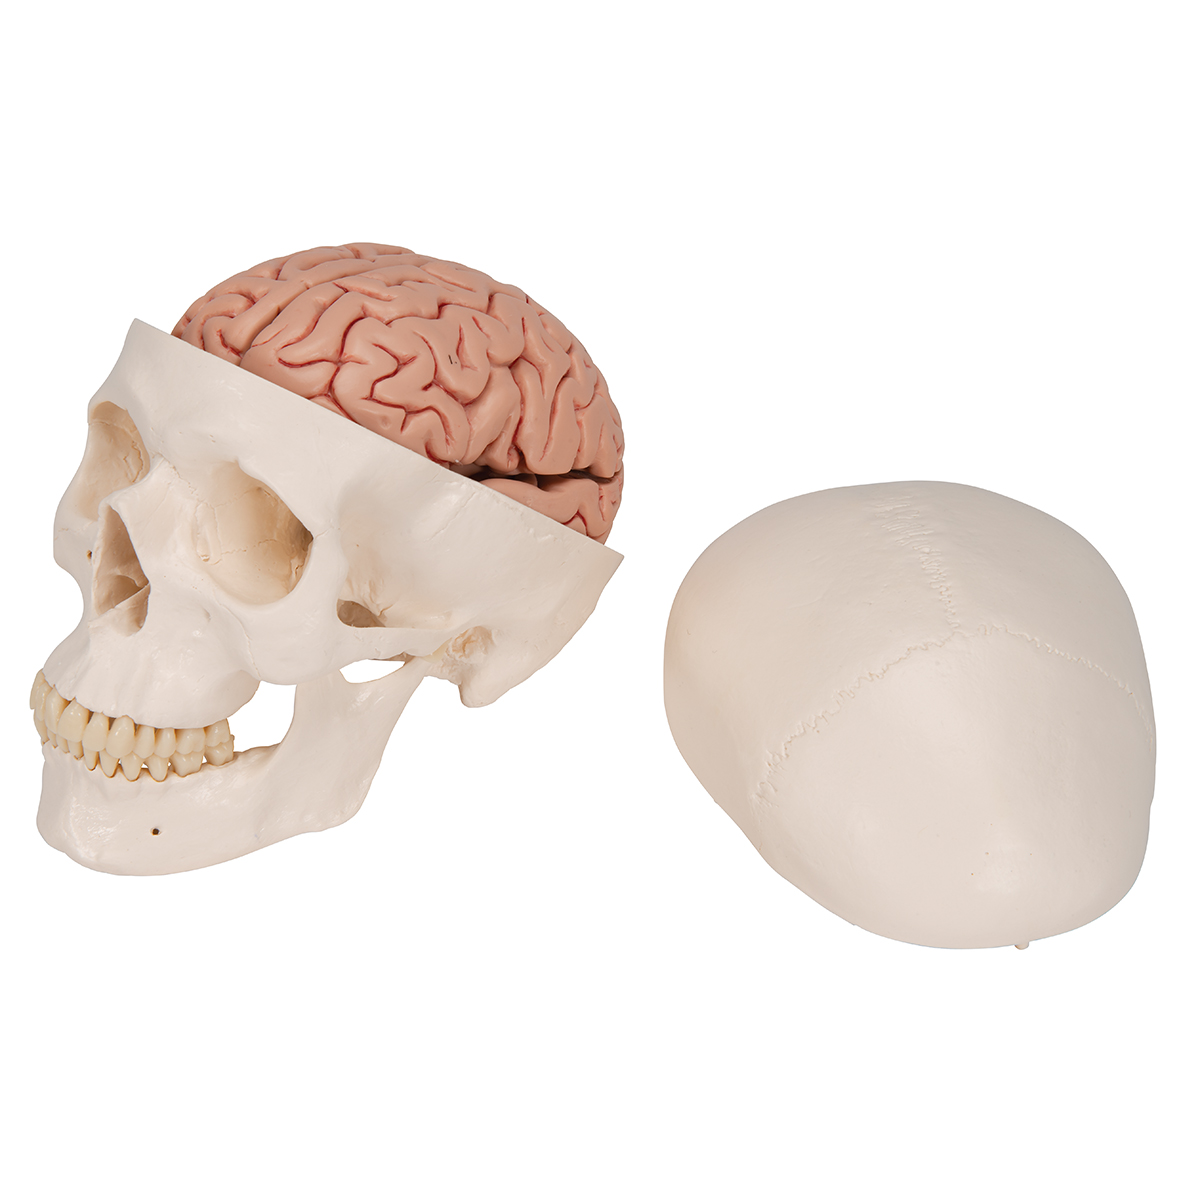 A20-9_05_1200_1200_Menschliches-Schaedel-Modell-Klassik-mit-Gehirn-8-teilig-3B-Smart-Anatomy